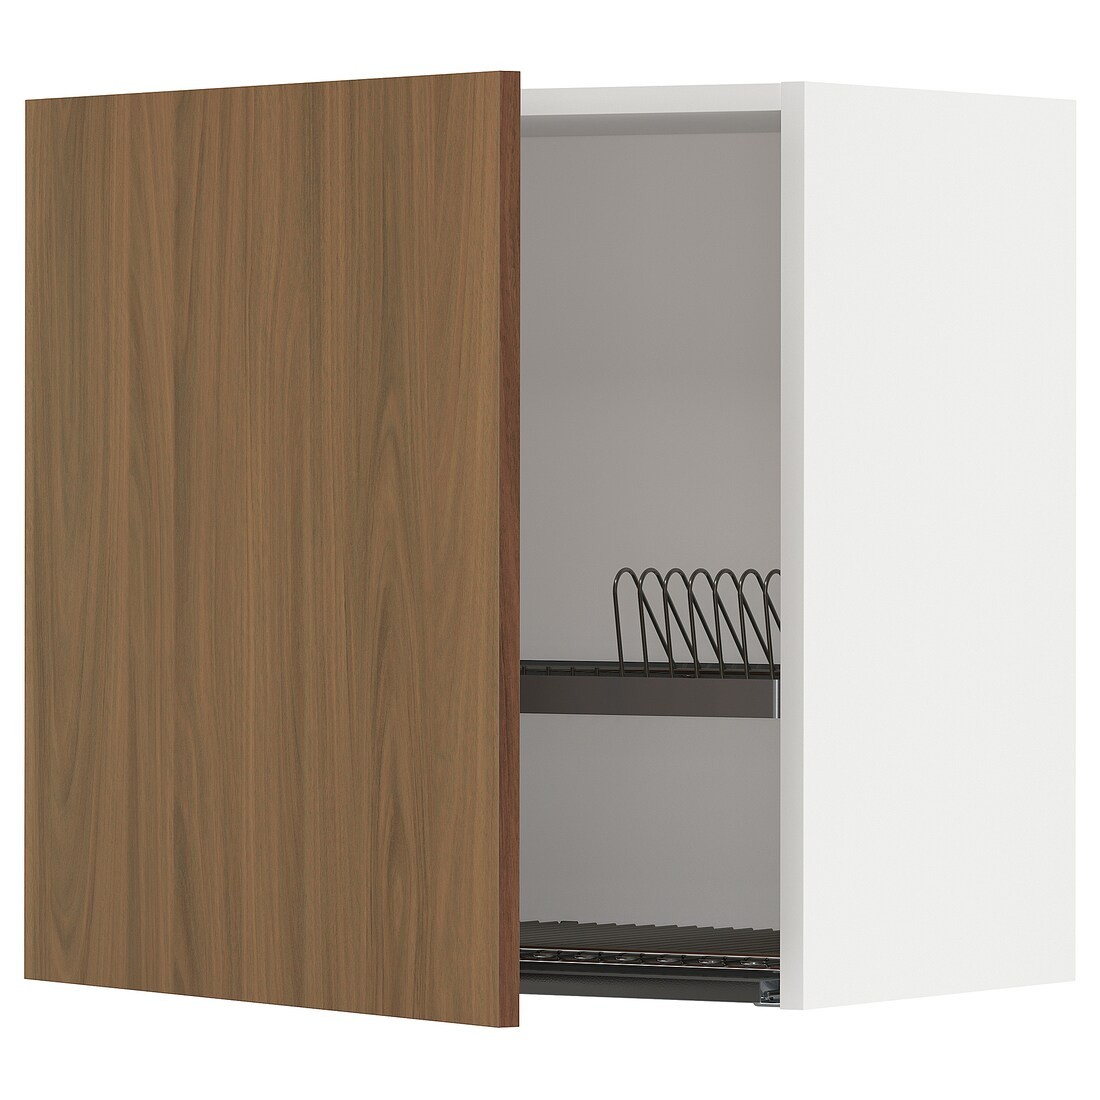 METOD Навесной шкаф с сушилкой, белый / Имитация коричневого ореха, 60x60 см